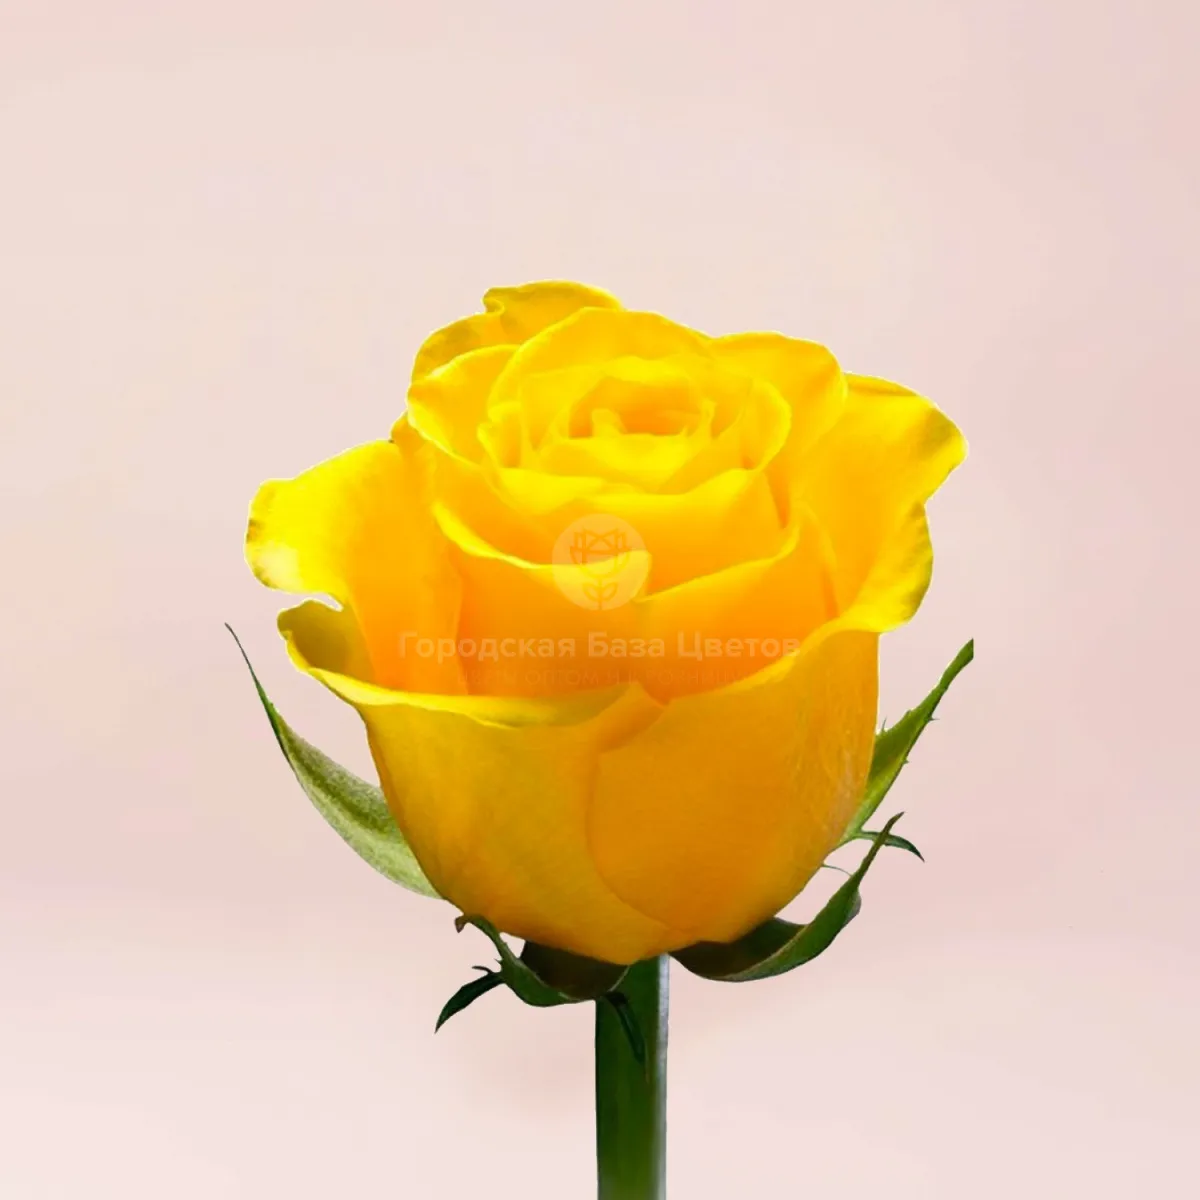 33 желтые розы (60 см)